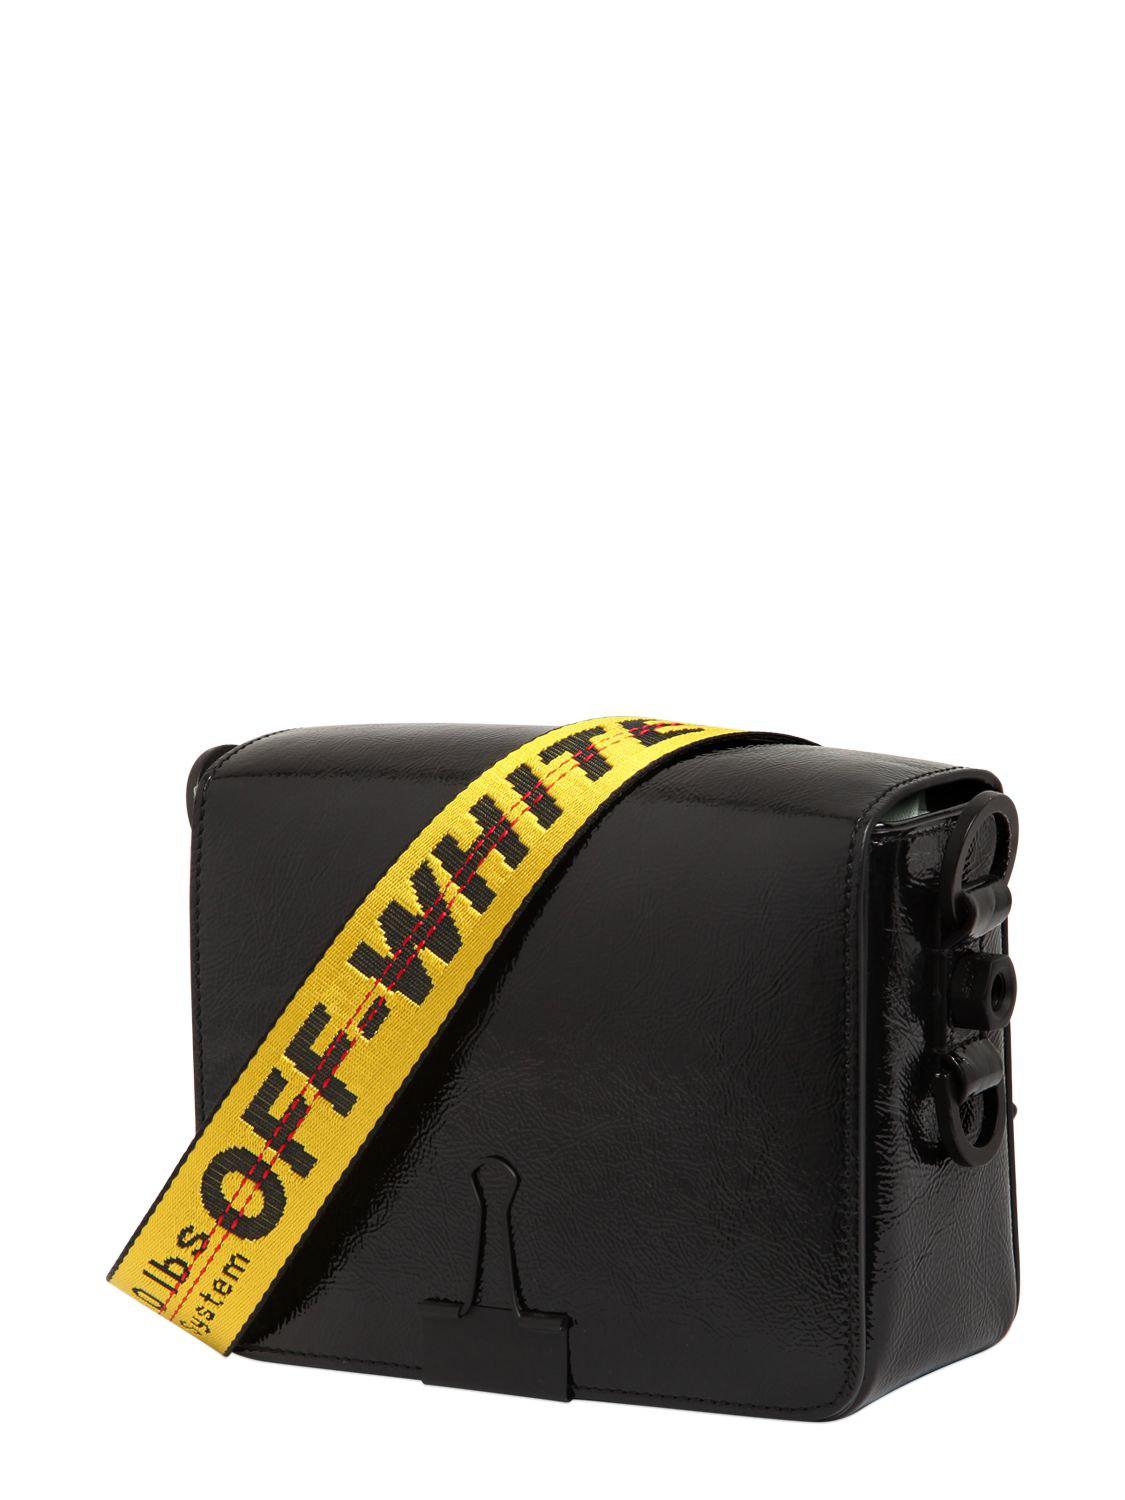 Off-White c/o Virgil Abloh Binder Clip Patent Leather Shoulder Bag in Black - Lyst